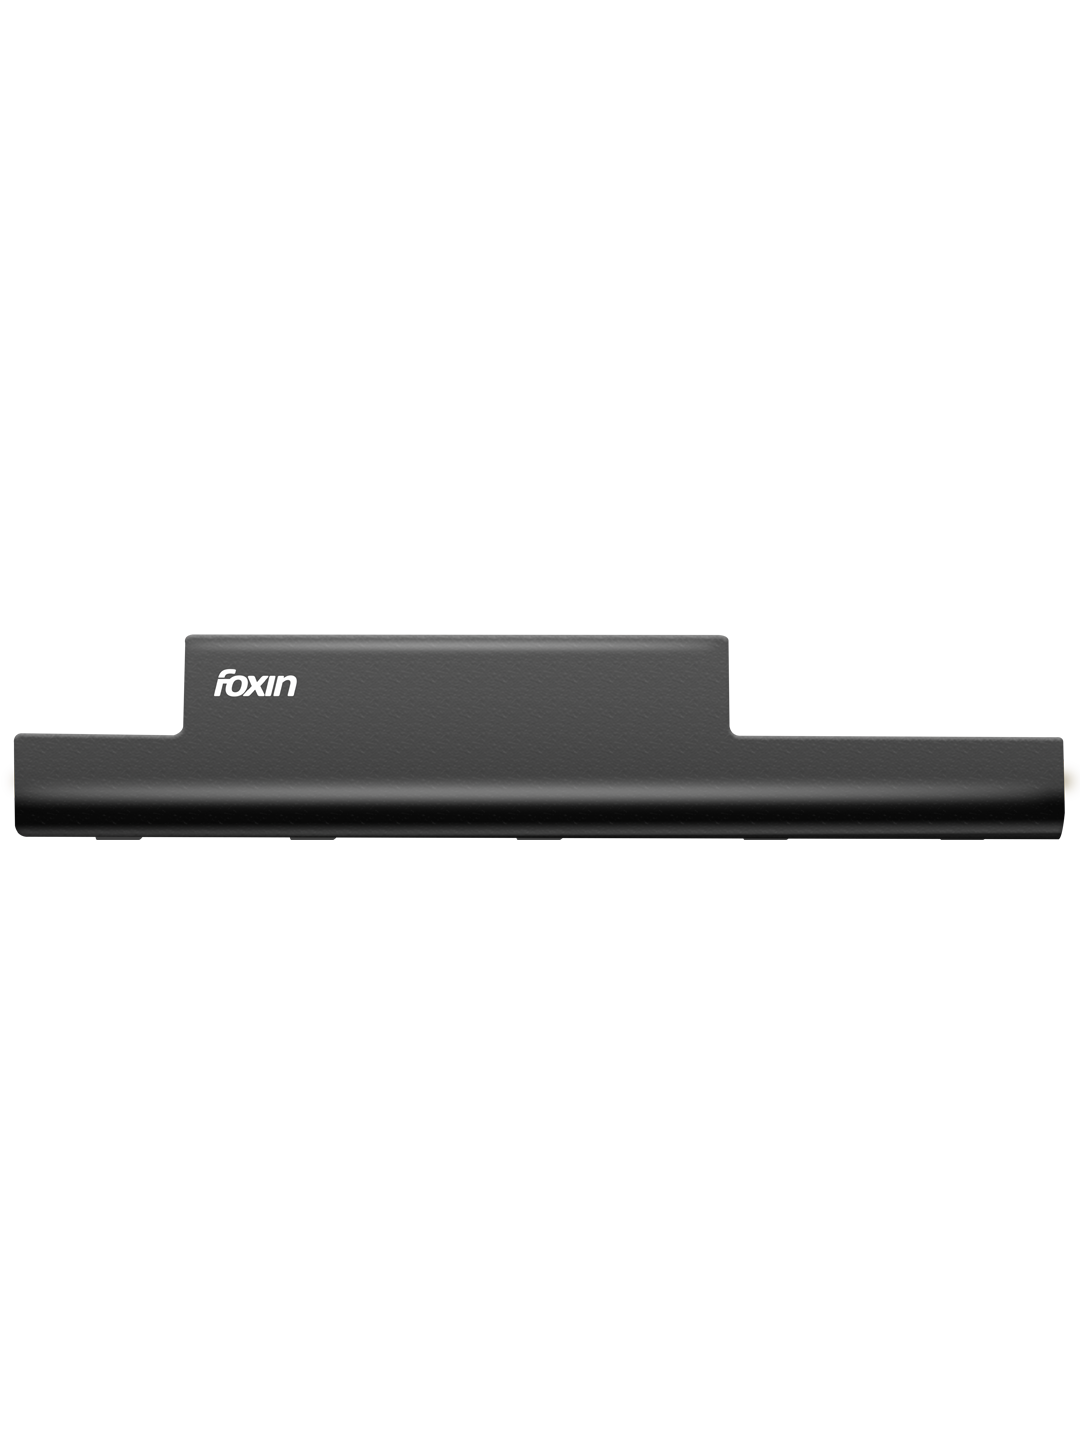 Foxin FLB6108ACR04741 Laptop Battery for ACER 10.8V